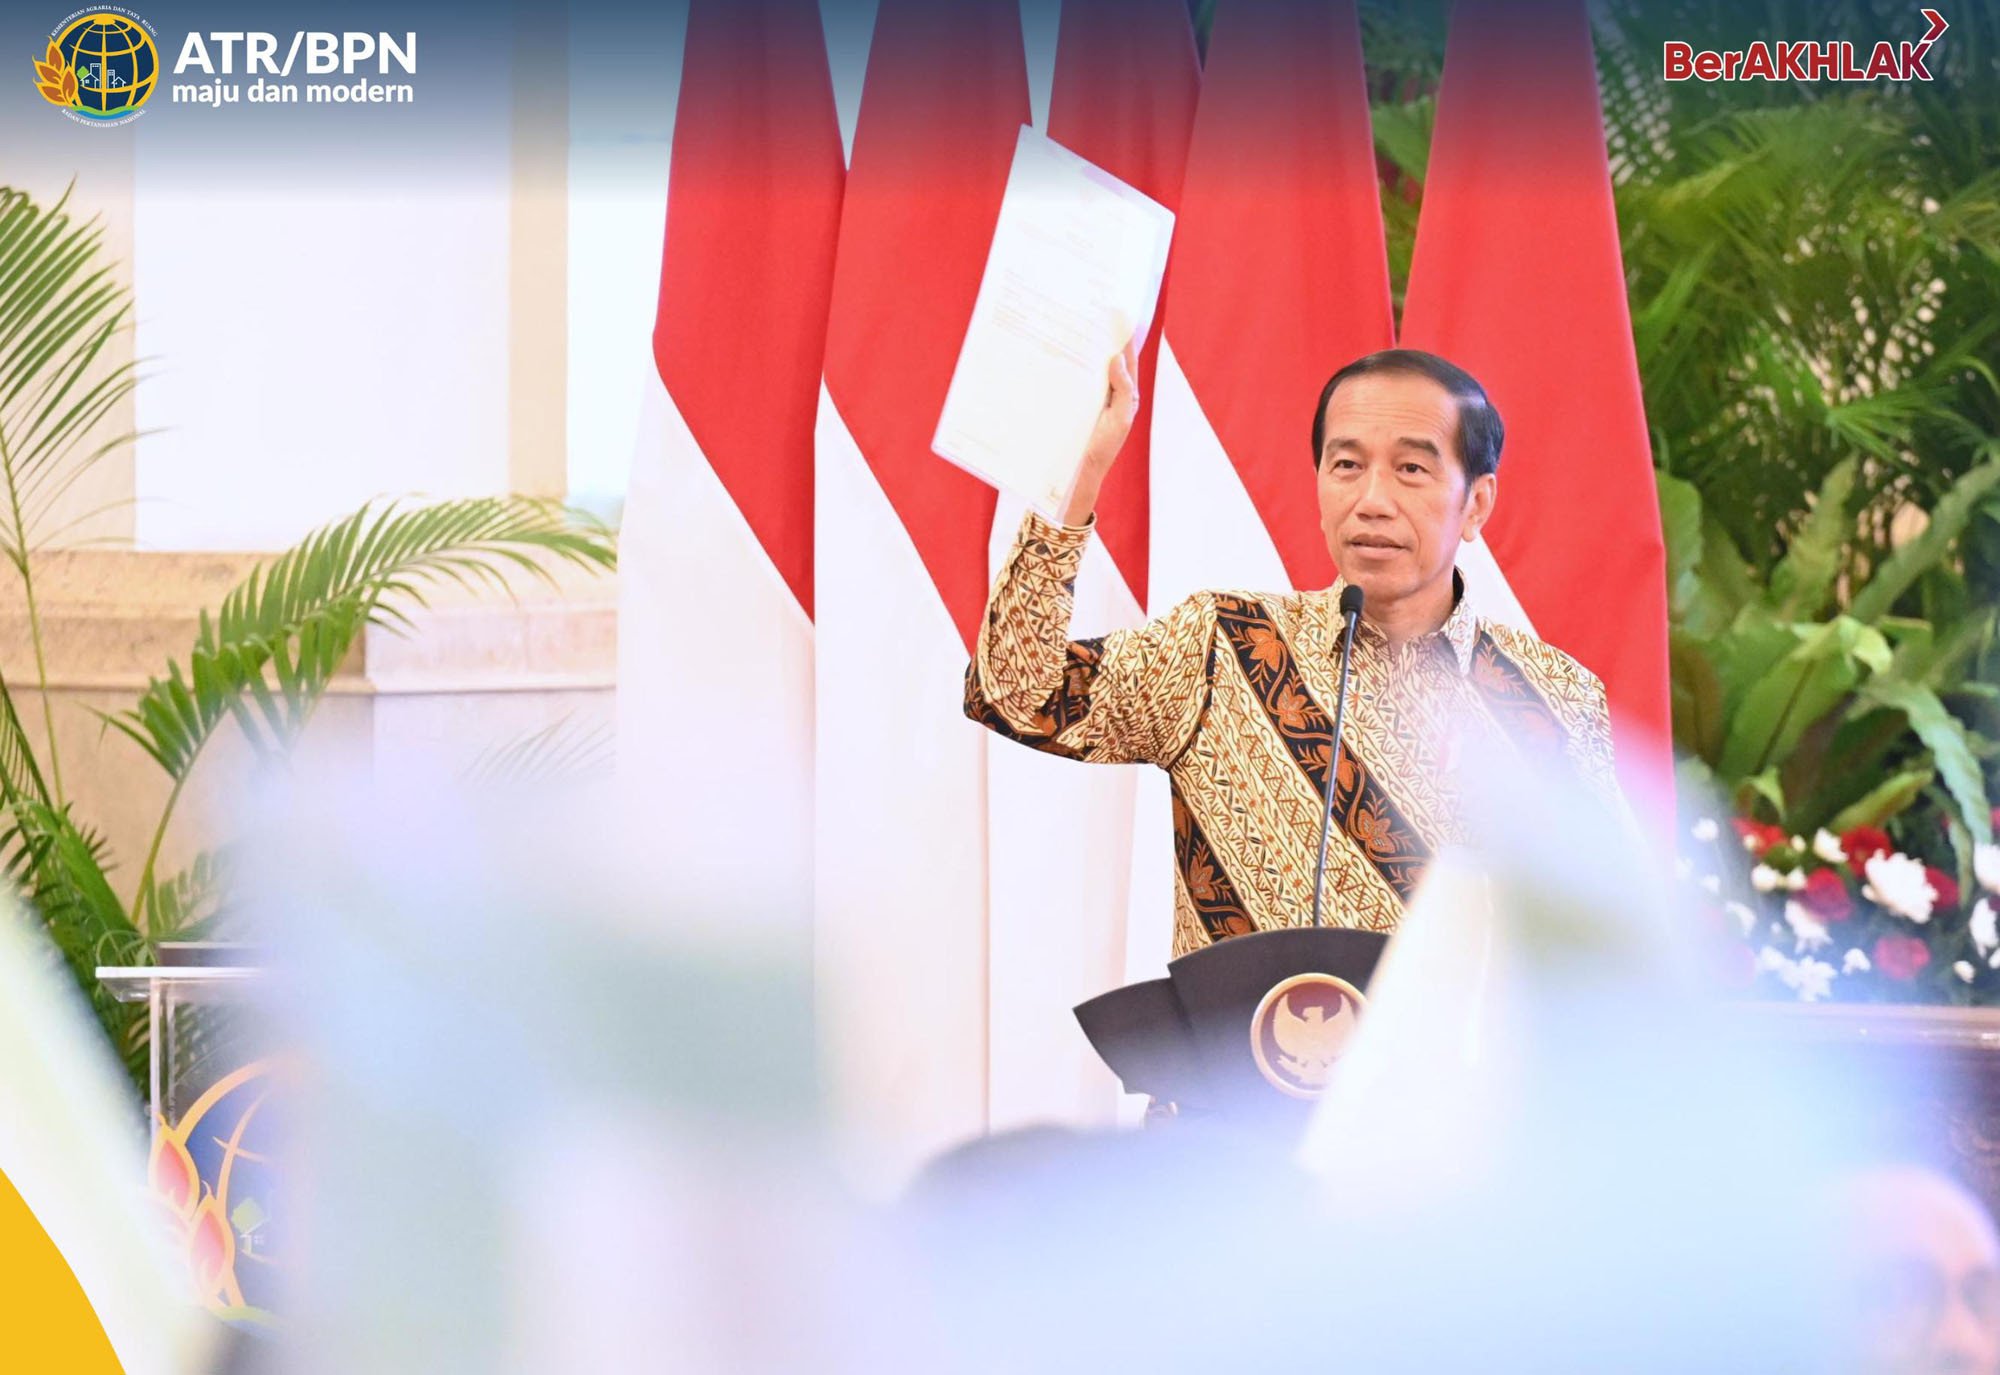 Polling Institute Rilis Kepuasan Publik kepada Jokowi Tembus 77,1 Persen